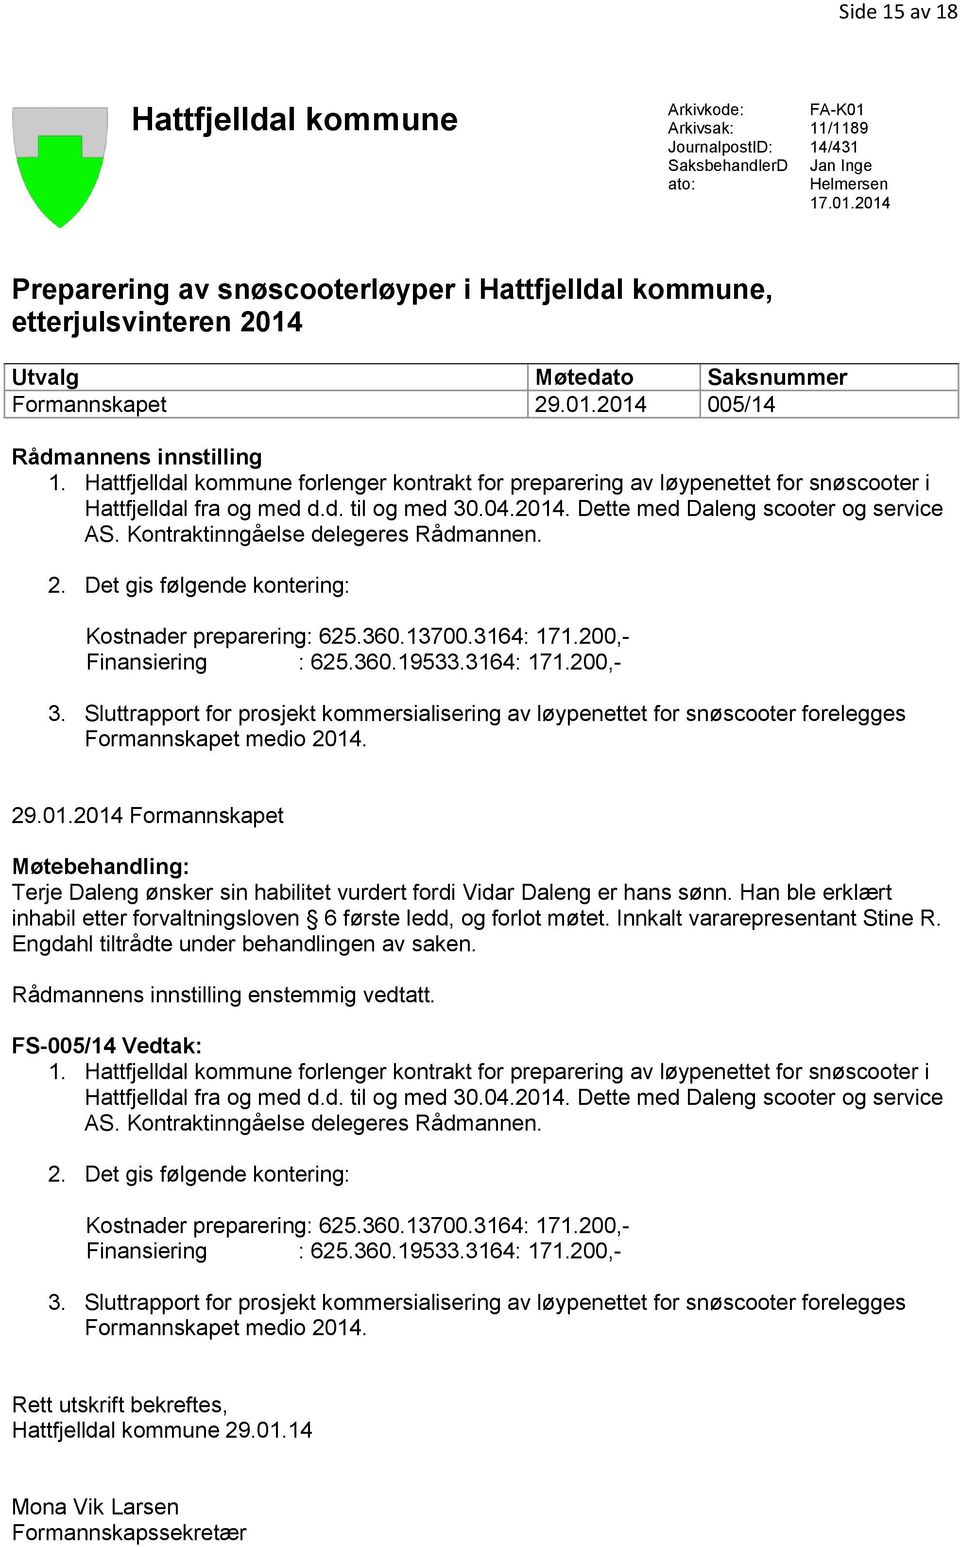 Hattfjelldal kommune forlenger kontrakt for preparering av løypenettet for snøscooter i Hattfjelldal fra og med d.d. til og med 30.04.2014. Dette med Daleng scooter og service AS.